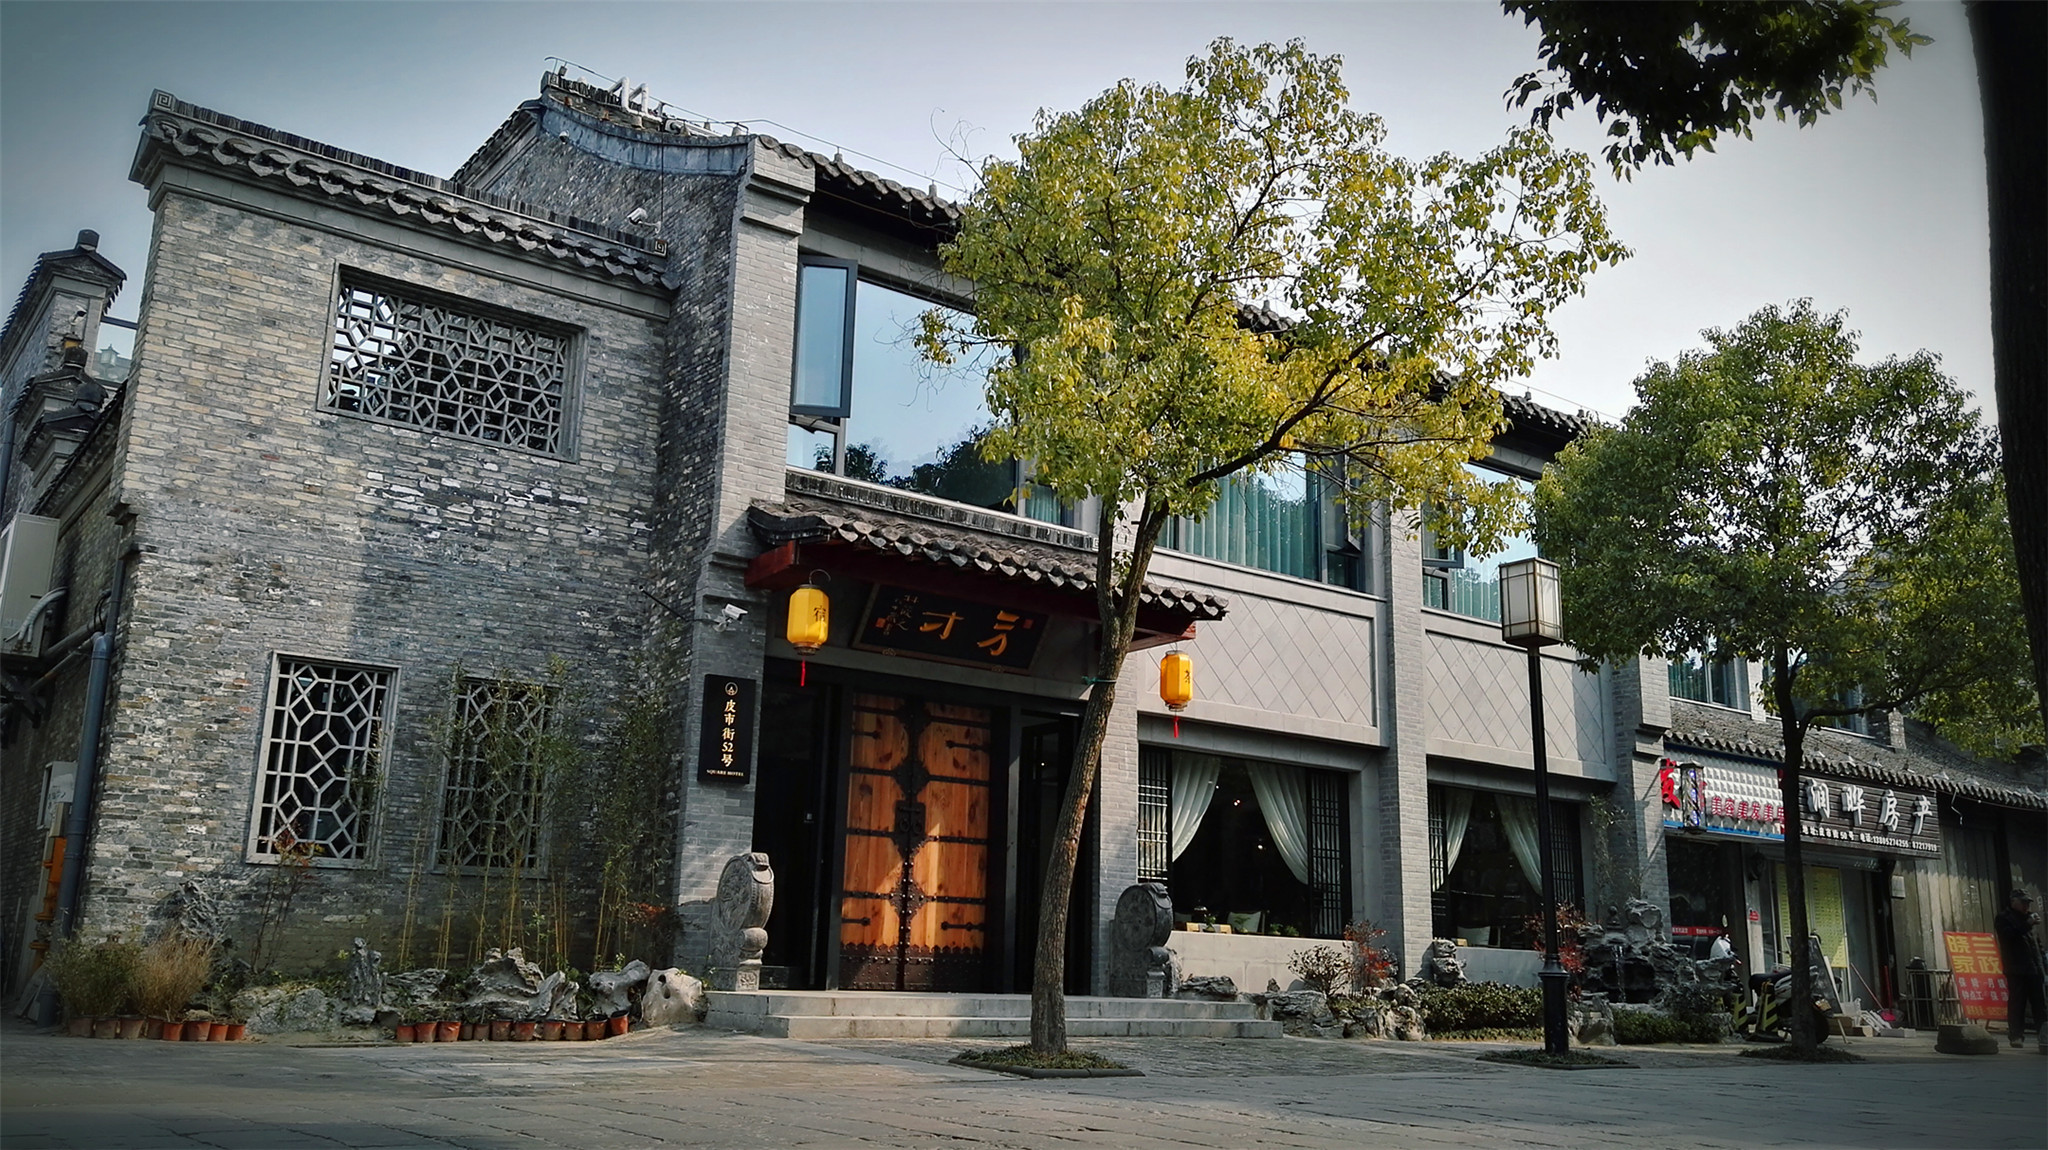 扬州富春花园酒楼图片